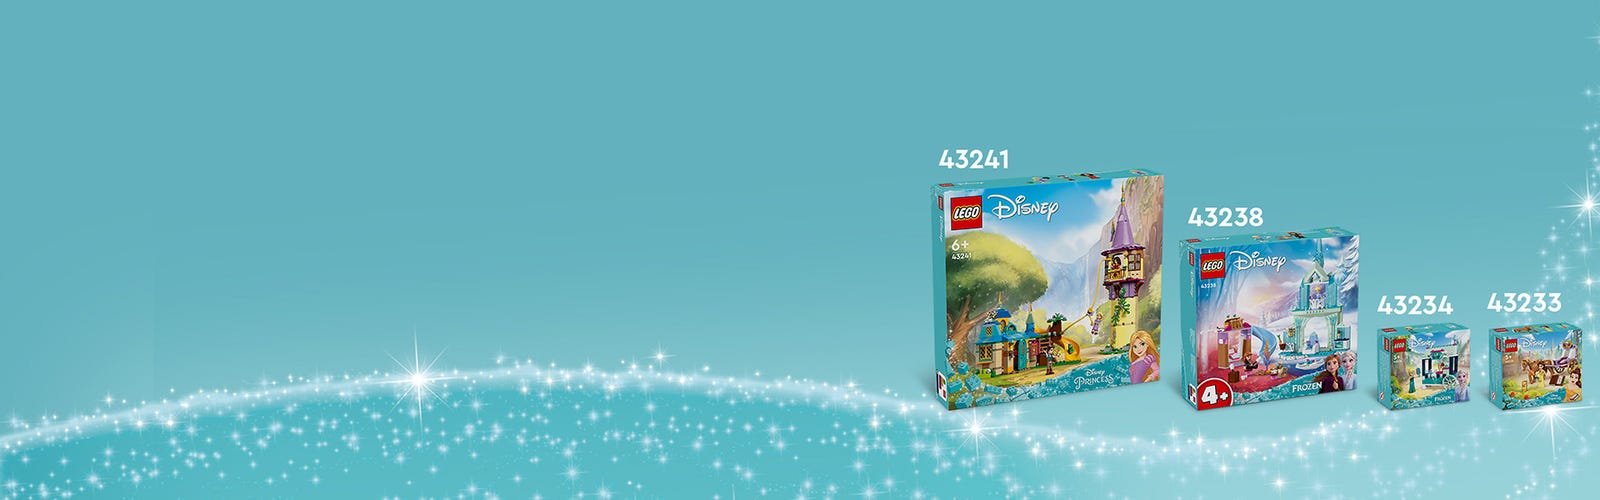 LEGO Disney 43241 pas cher, La tour de Raiponce et la Taverne du Canard  Boiteux